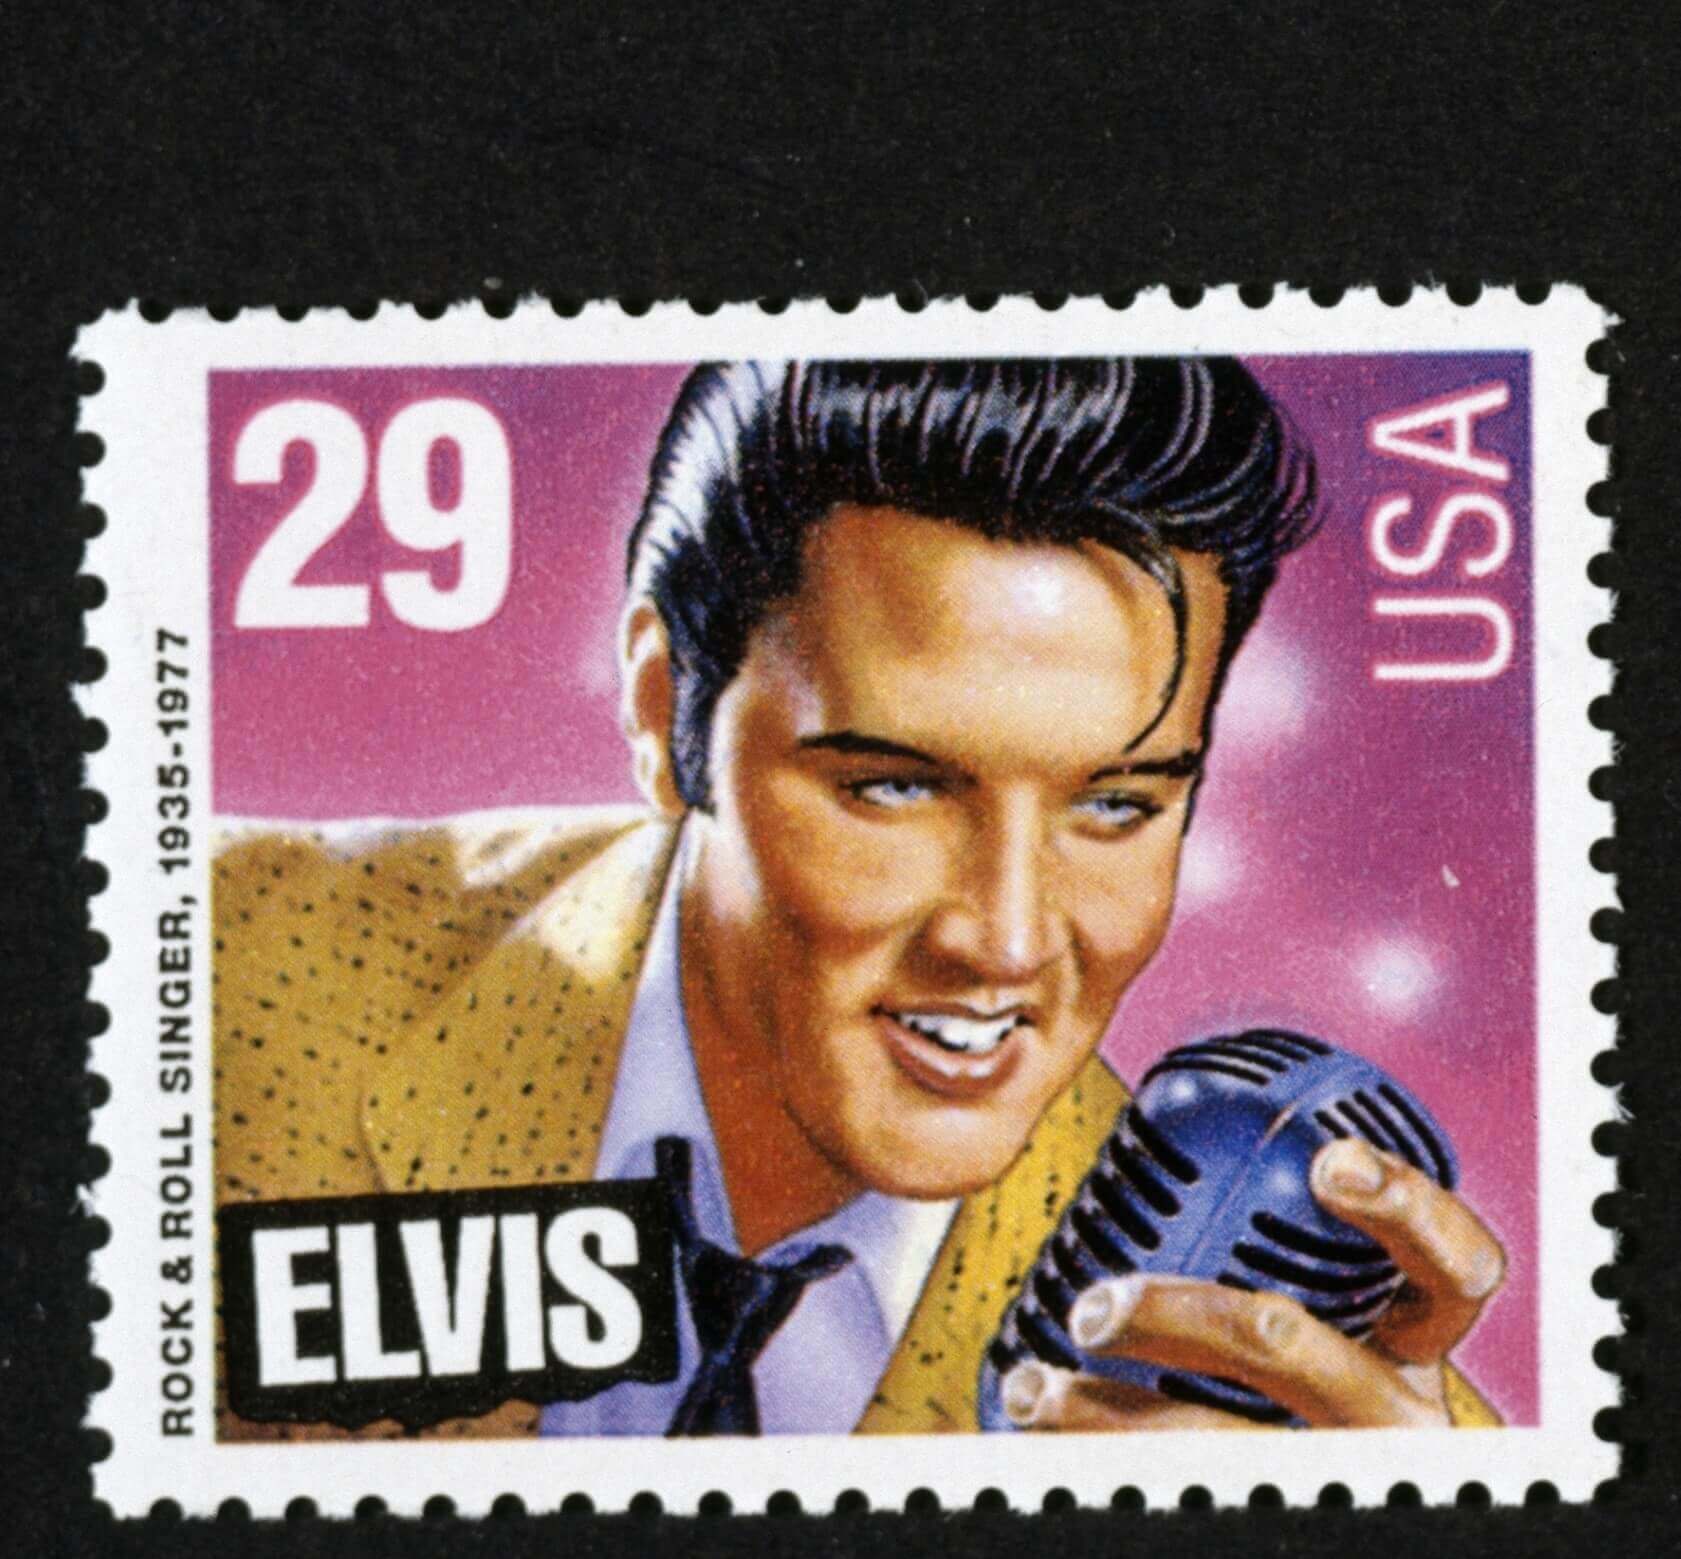 "Hound Dog" singer Elvis Presley on a stamp